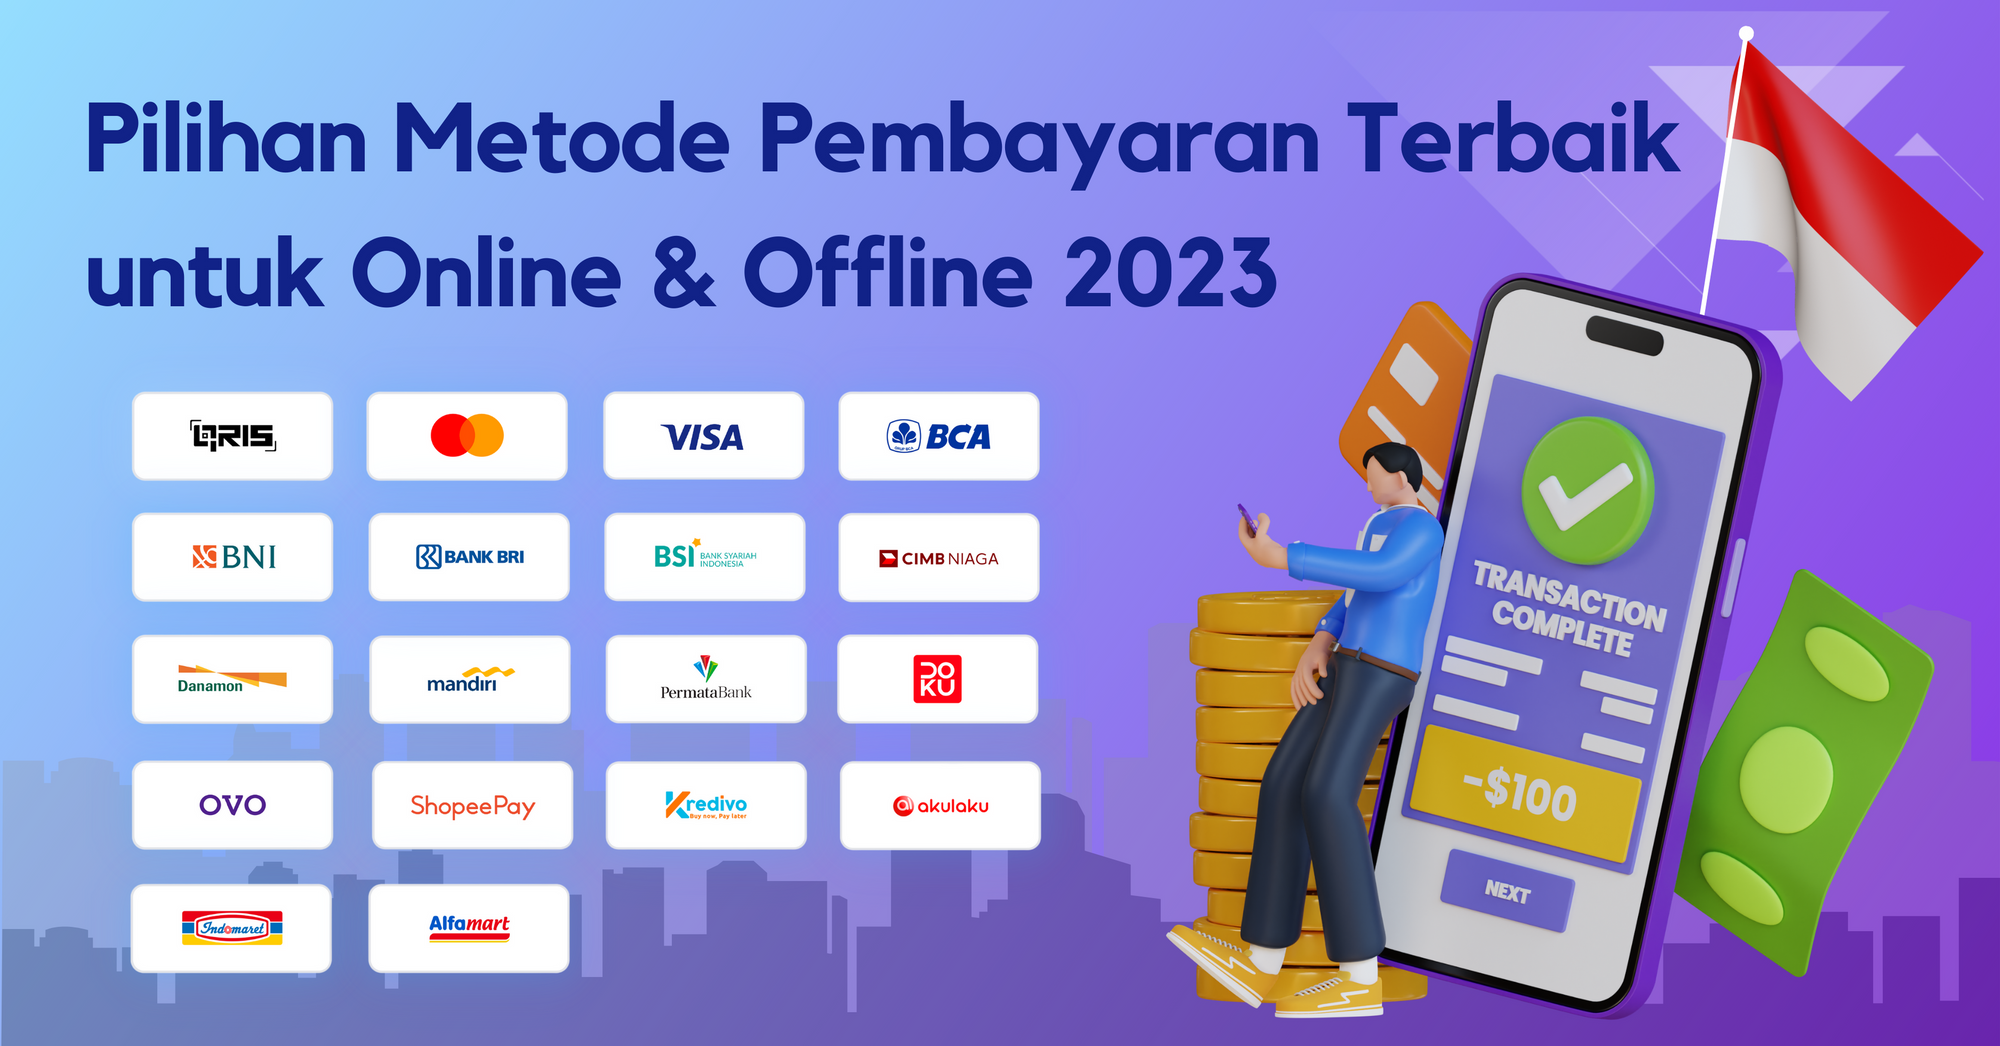 Pilihan Metode Pembayaran Terbaik di Indonesia Online dan Offline 2023: Panduan Untuk Merchant